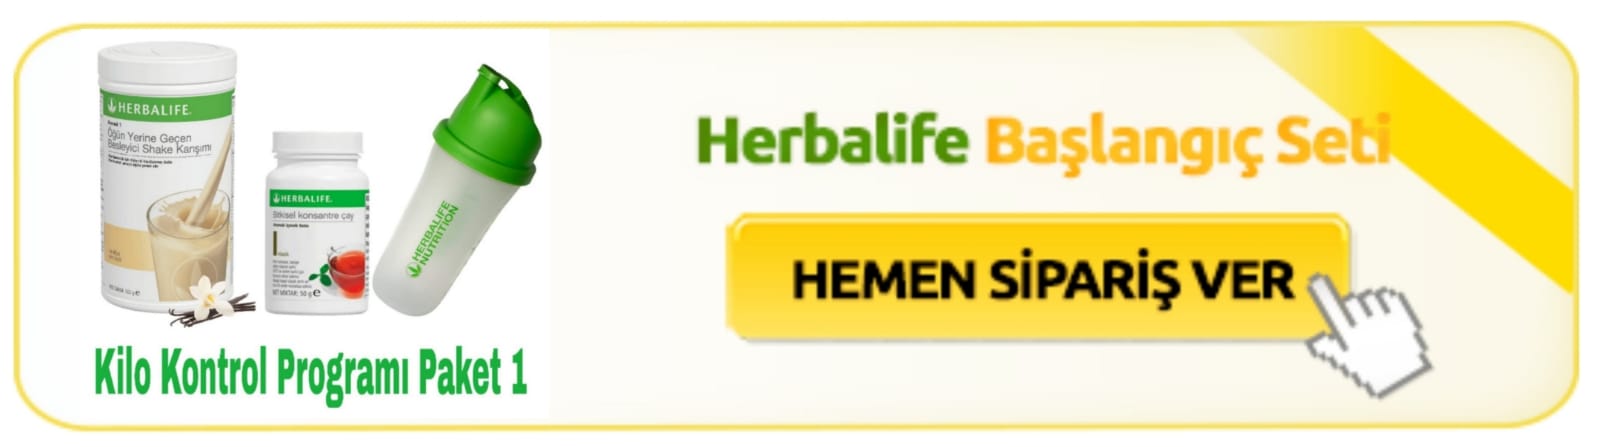 herbalife-baslangic-seti-1.jpg - 52.86 KB